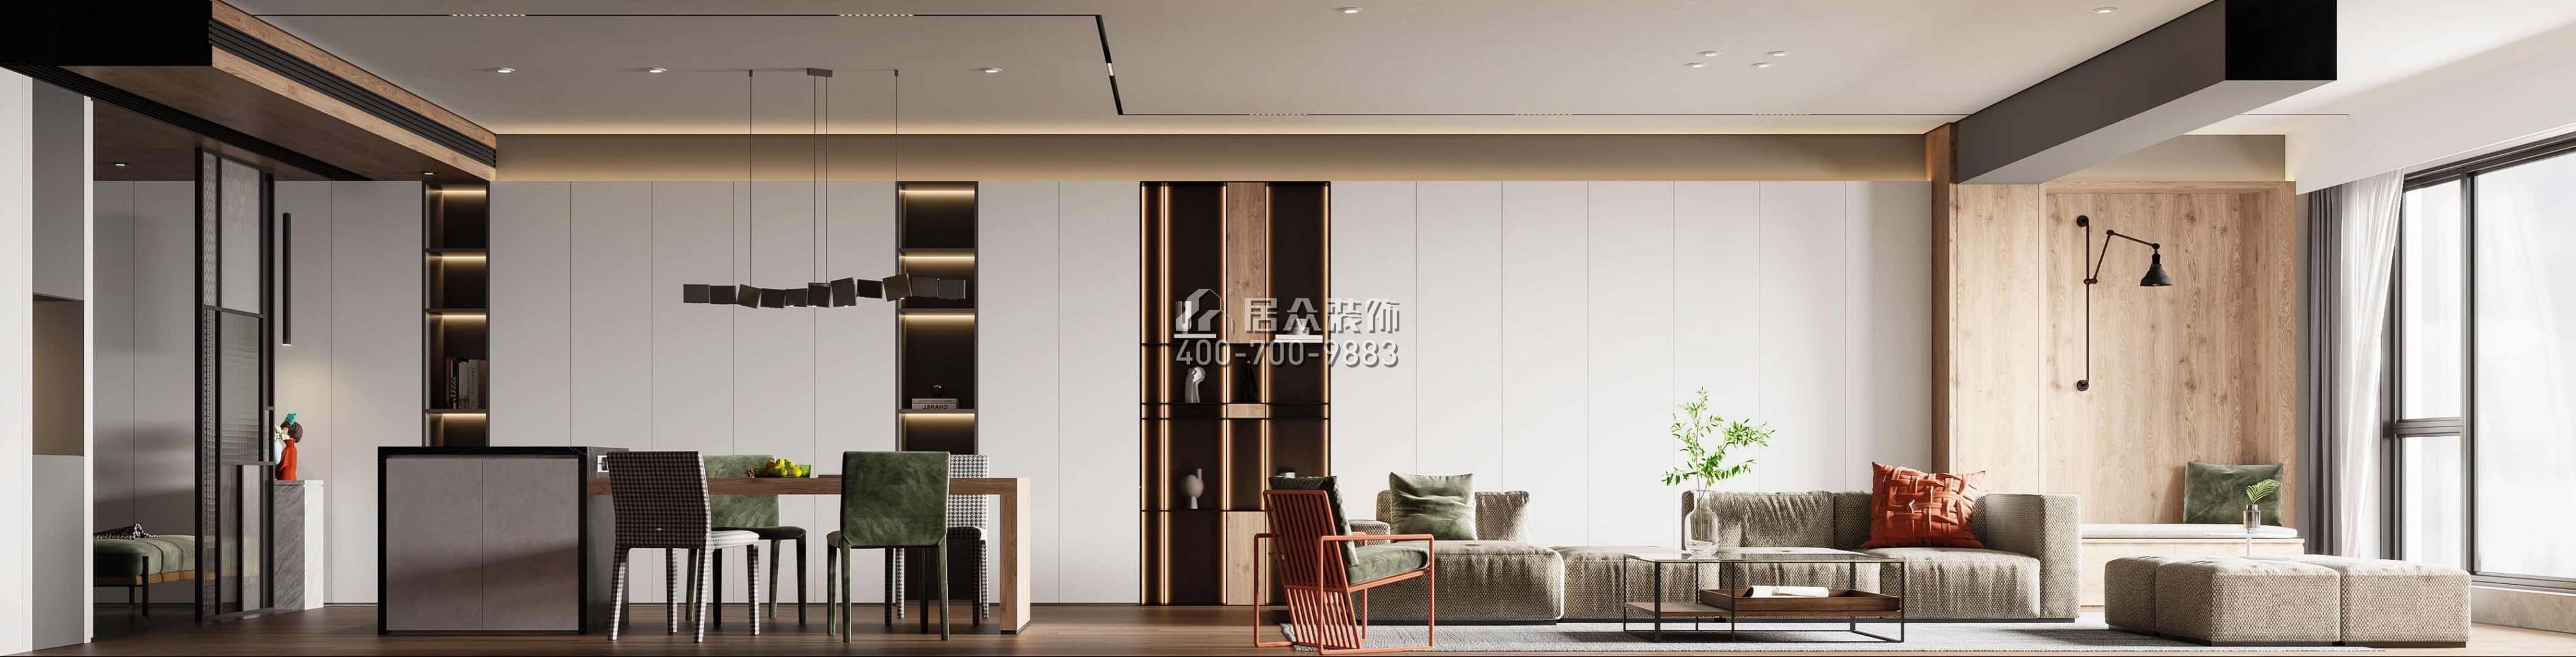 中建江山壹號197平方米現代簡約風格平層戶型客餐廳一體裝修效果圖